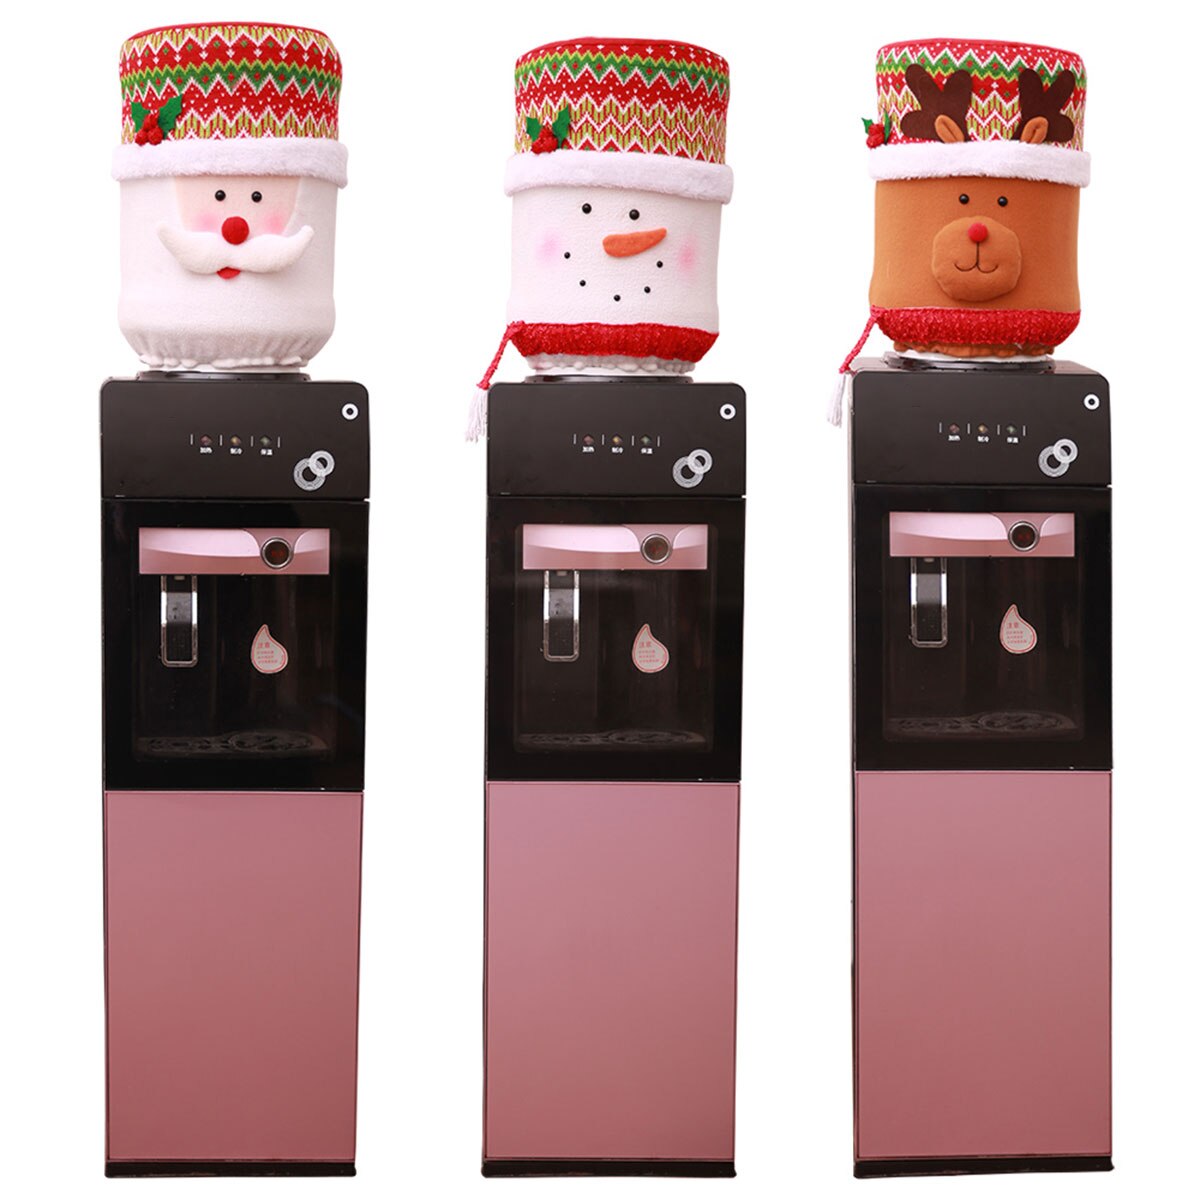 Vanddispenser støvdæksel juledekorationer kontor vanddispenser spandåse julemanden / snemand / elg anti-støvdæksel